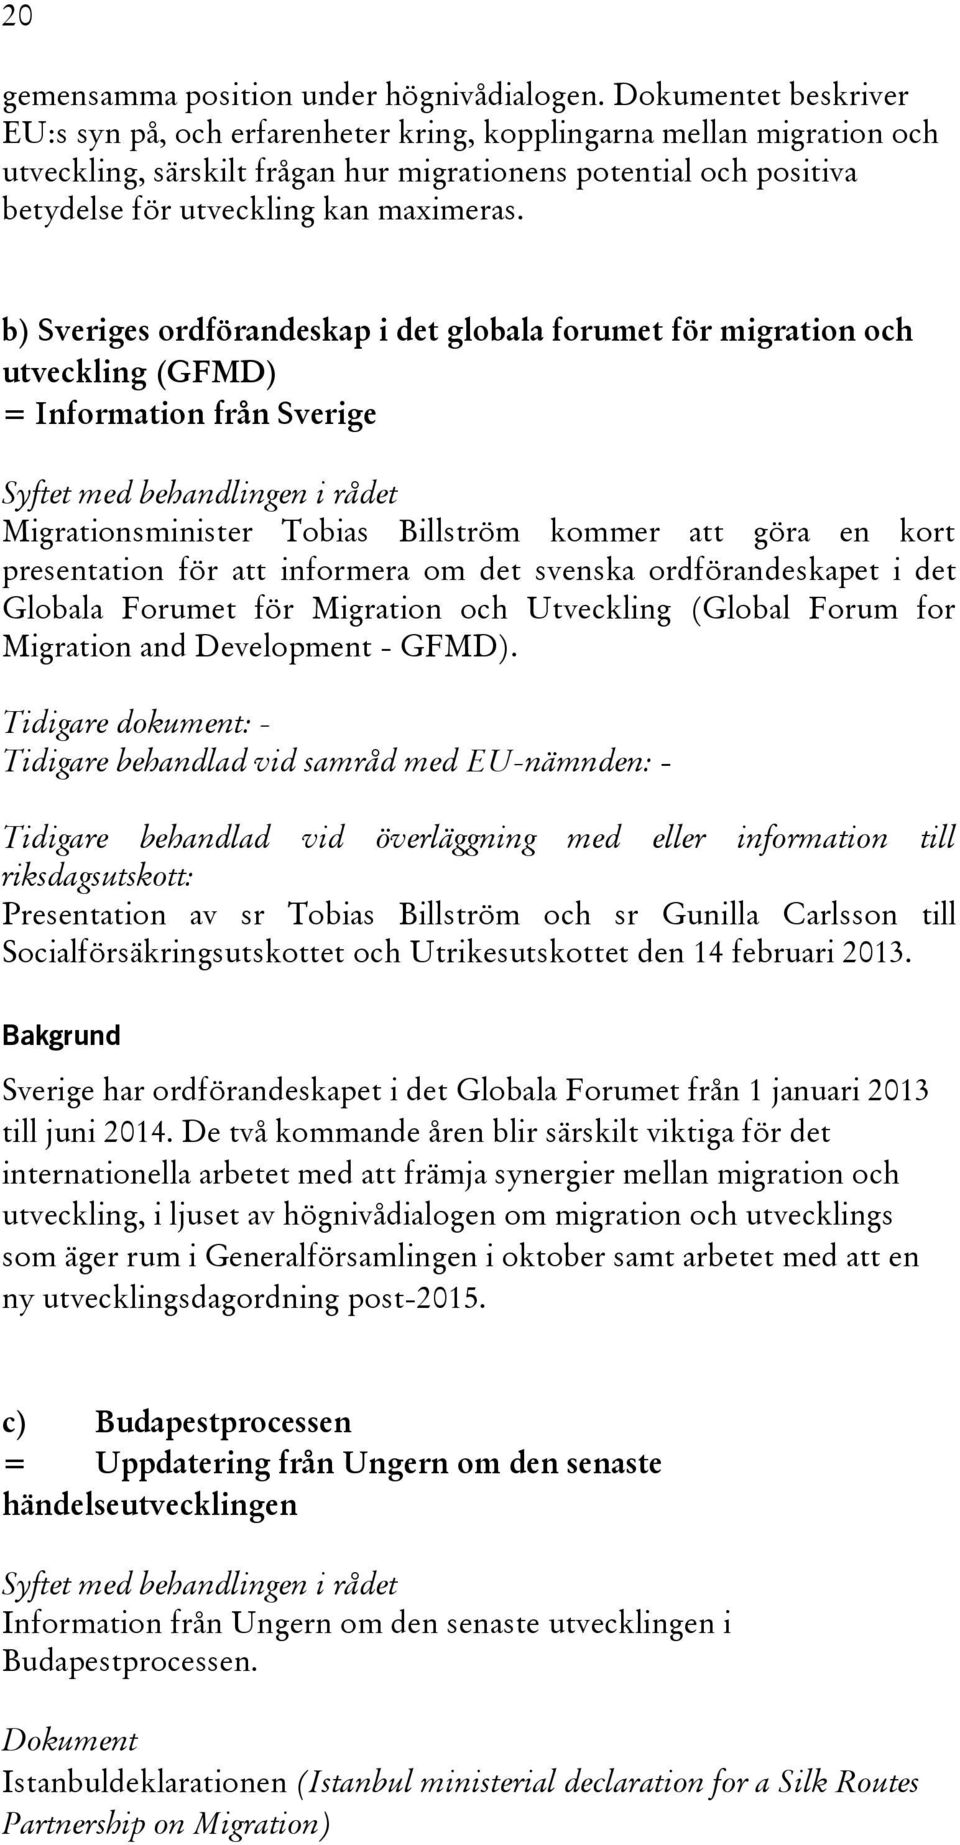 b) Sveriges ordförandeskap i det globala forumet för migration och utveckling (GFMD) = Information från Sverige Syftet med behandlingen i rådet Migrationsminister Tobias Billström kommer att göra en